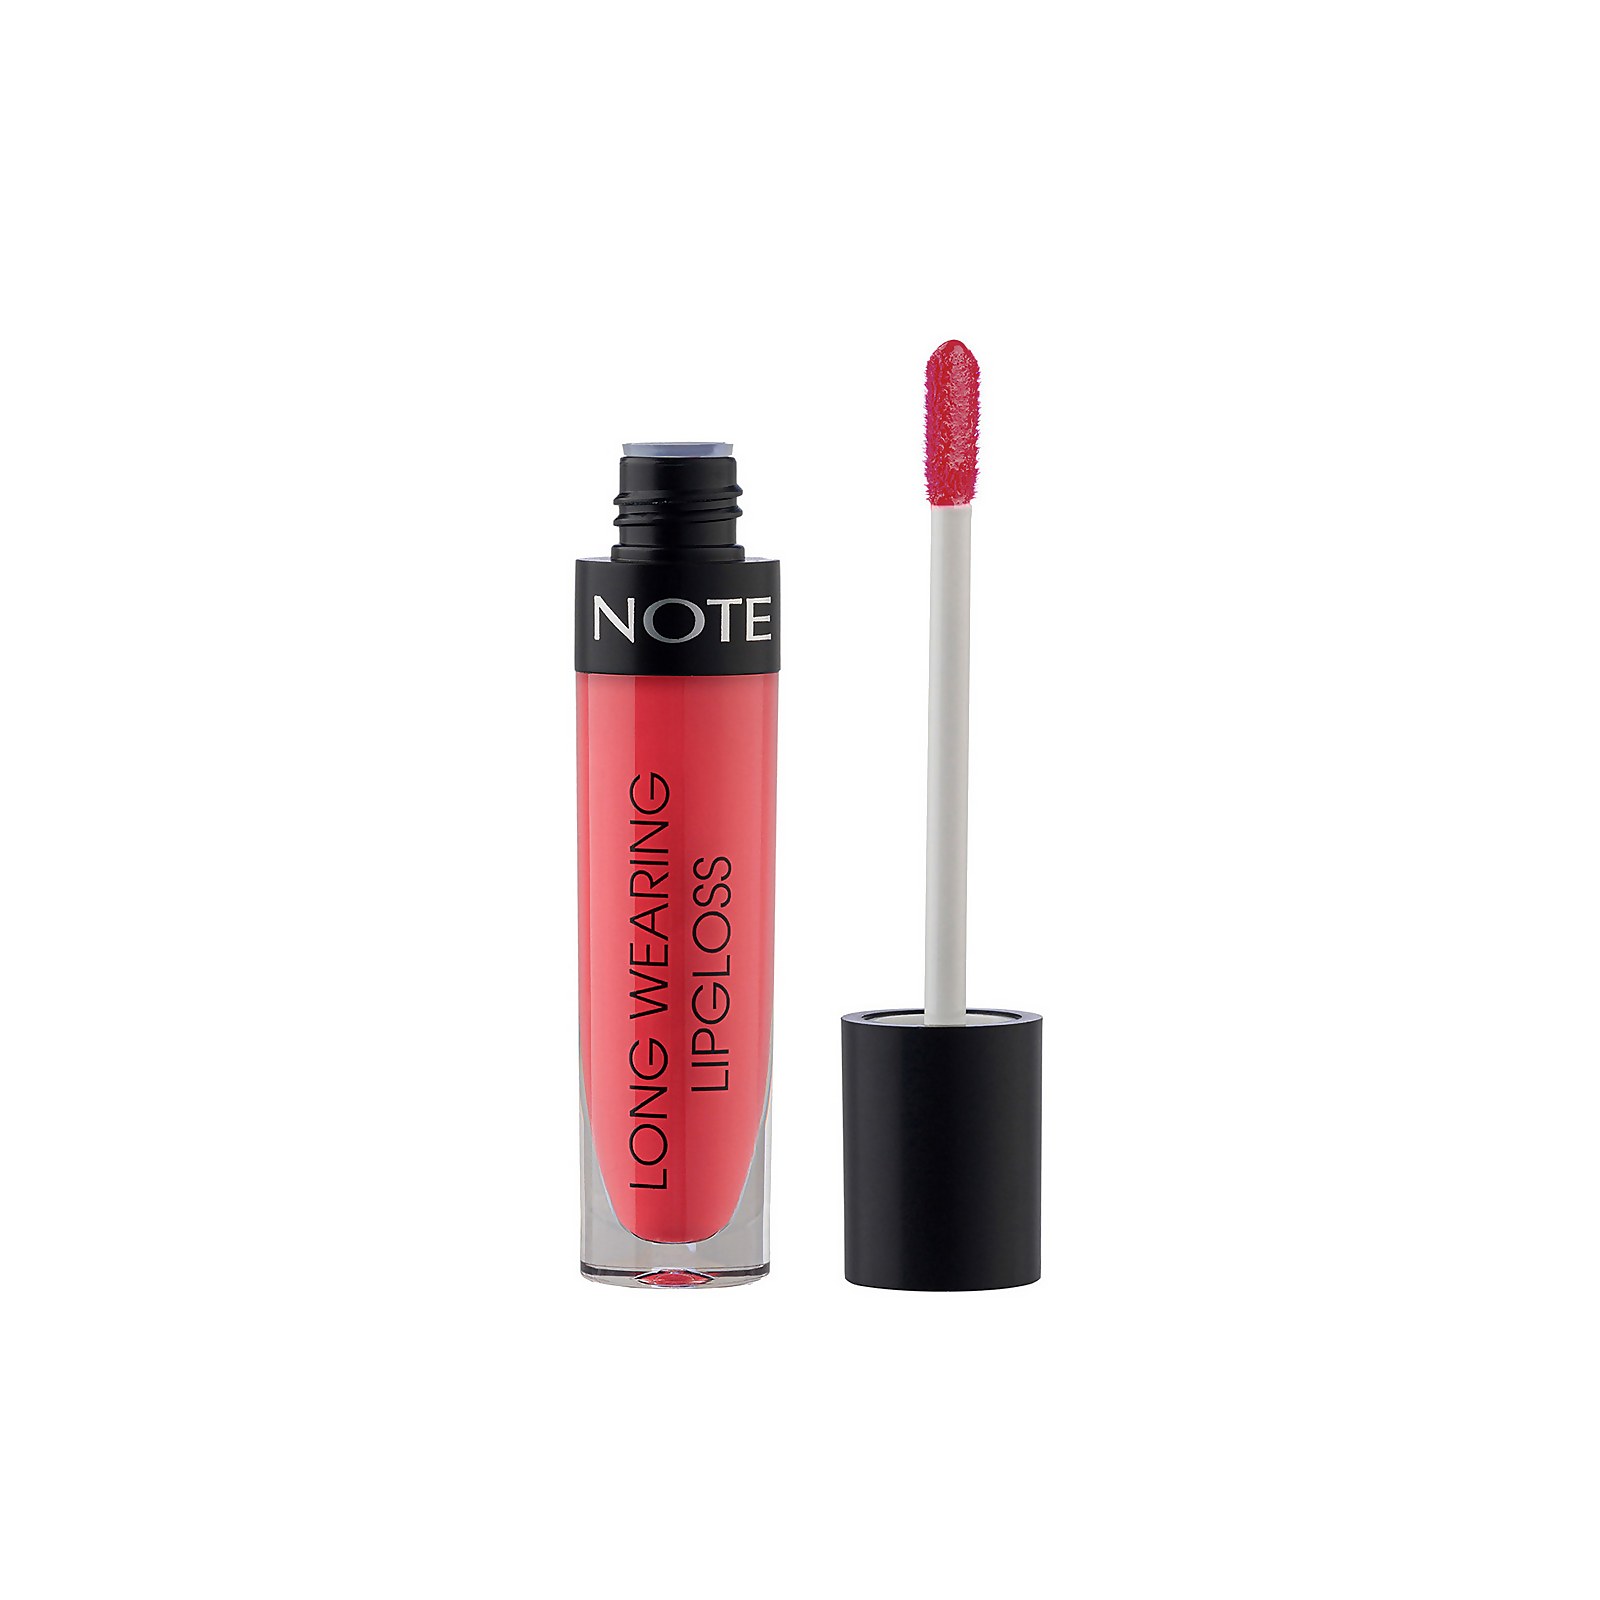 Note Cosmetics Long Wearing Lip Gloss 6ml (Various Shades) - 14 Sugar Pink